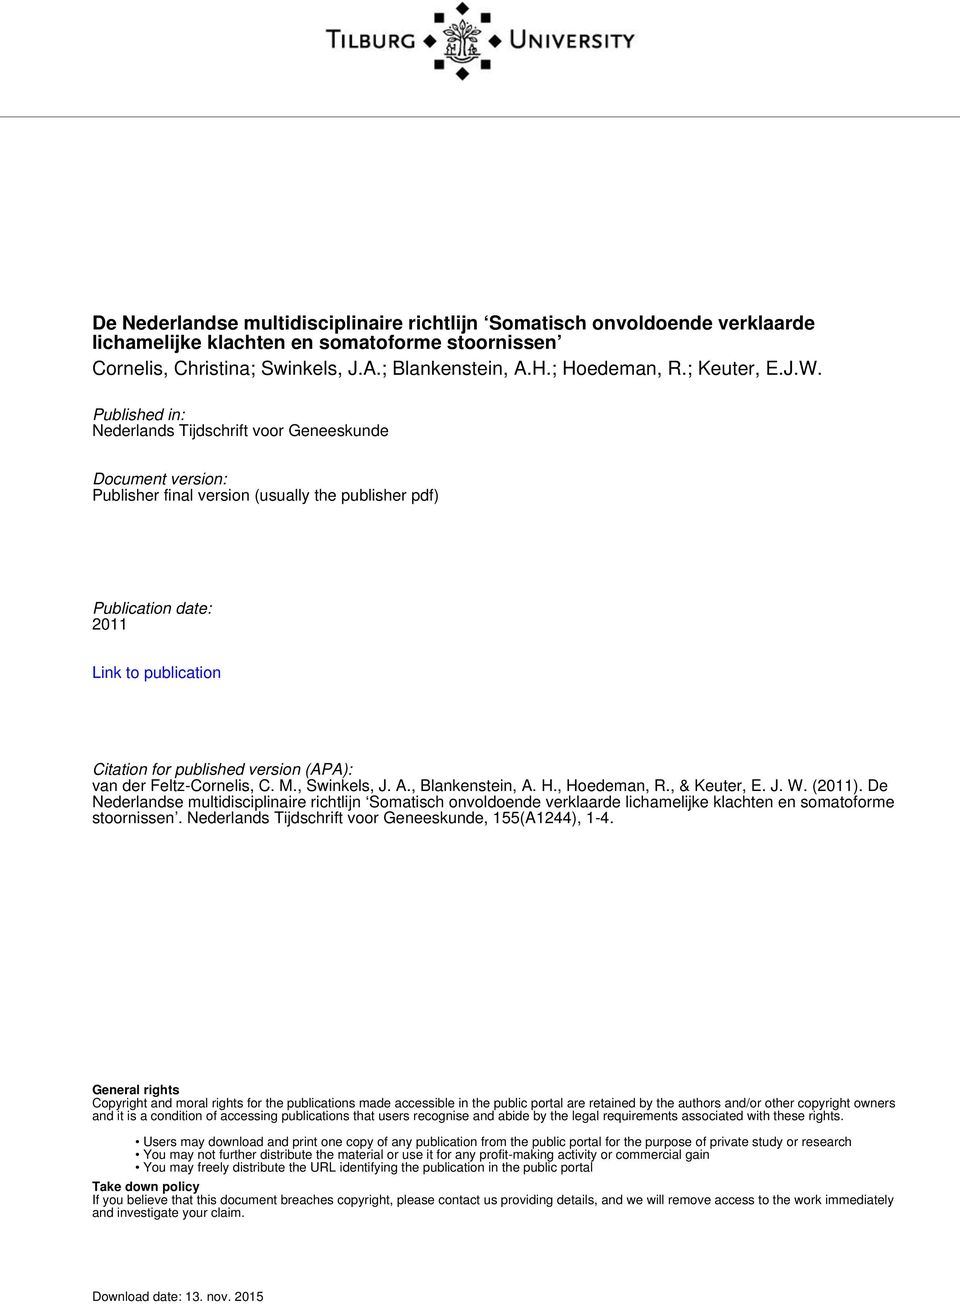 Published in: Nederlands Tijdschrift voor Geneeskunde Document version: Publisher final version (usually the publisher pdf) Publication date: 2011 Link to publication Citation for published version